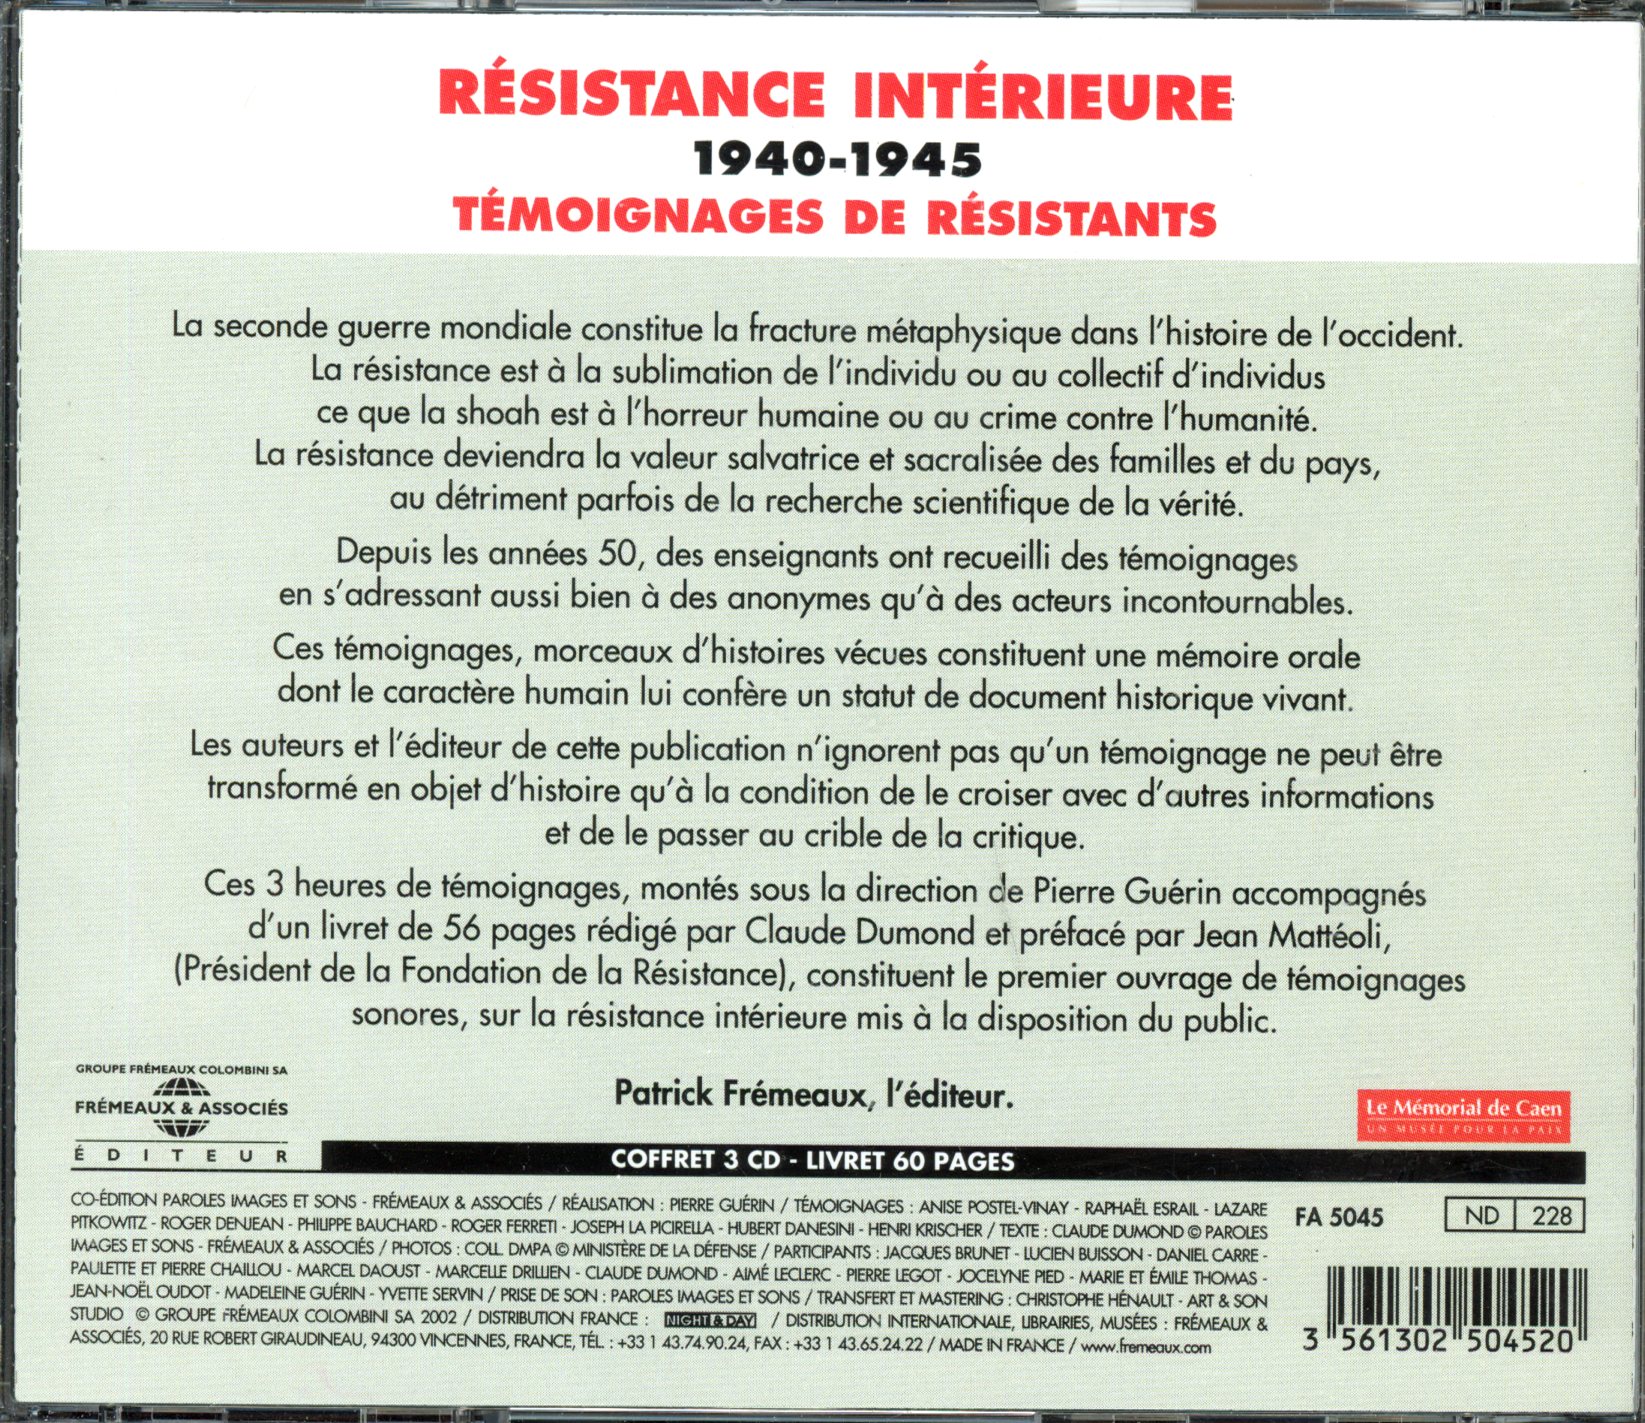 COFFRET SUR LA RESISTANCE INTERIEURE 1940-1945-3561302504520-LEMASTERBROCKERS